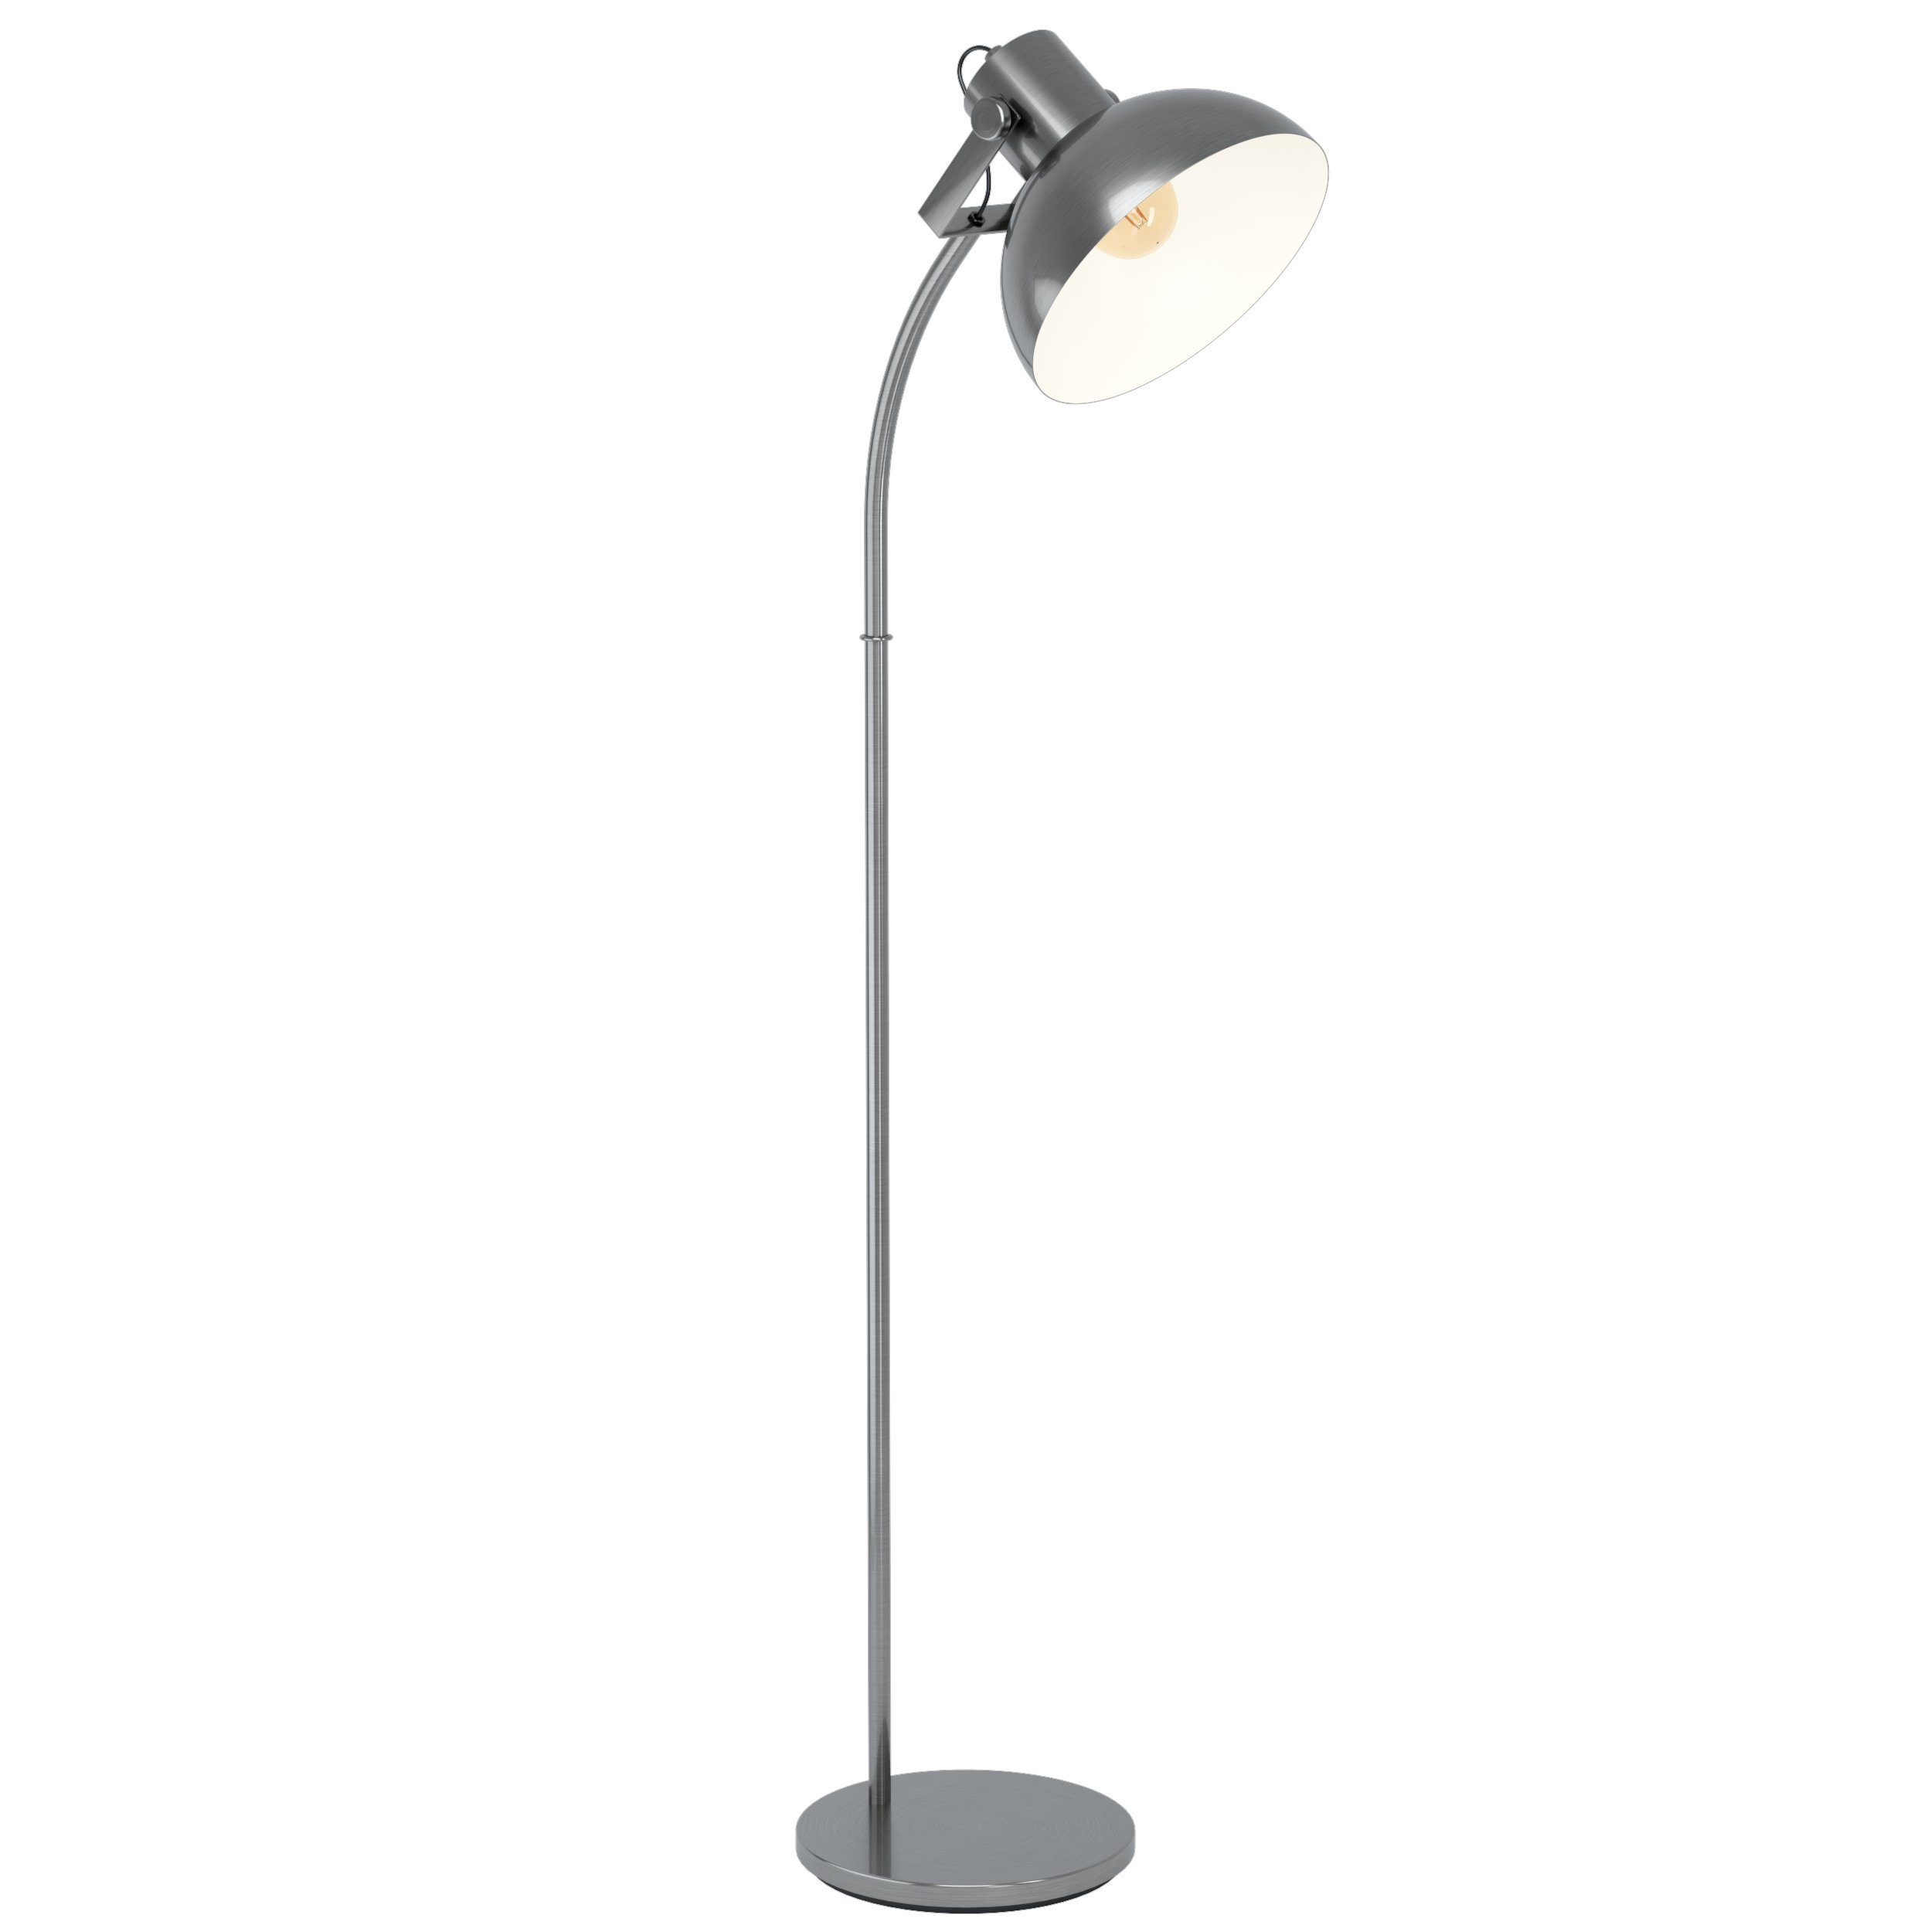 EGLO LED Stehlampe Lubenham 1, Leuchtmittel exklusive, Vintage Stehleuchte, Standlampe, Nickel matt, E27, Trittschalter